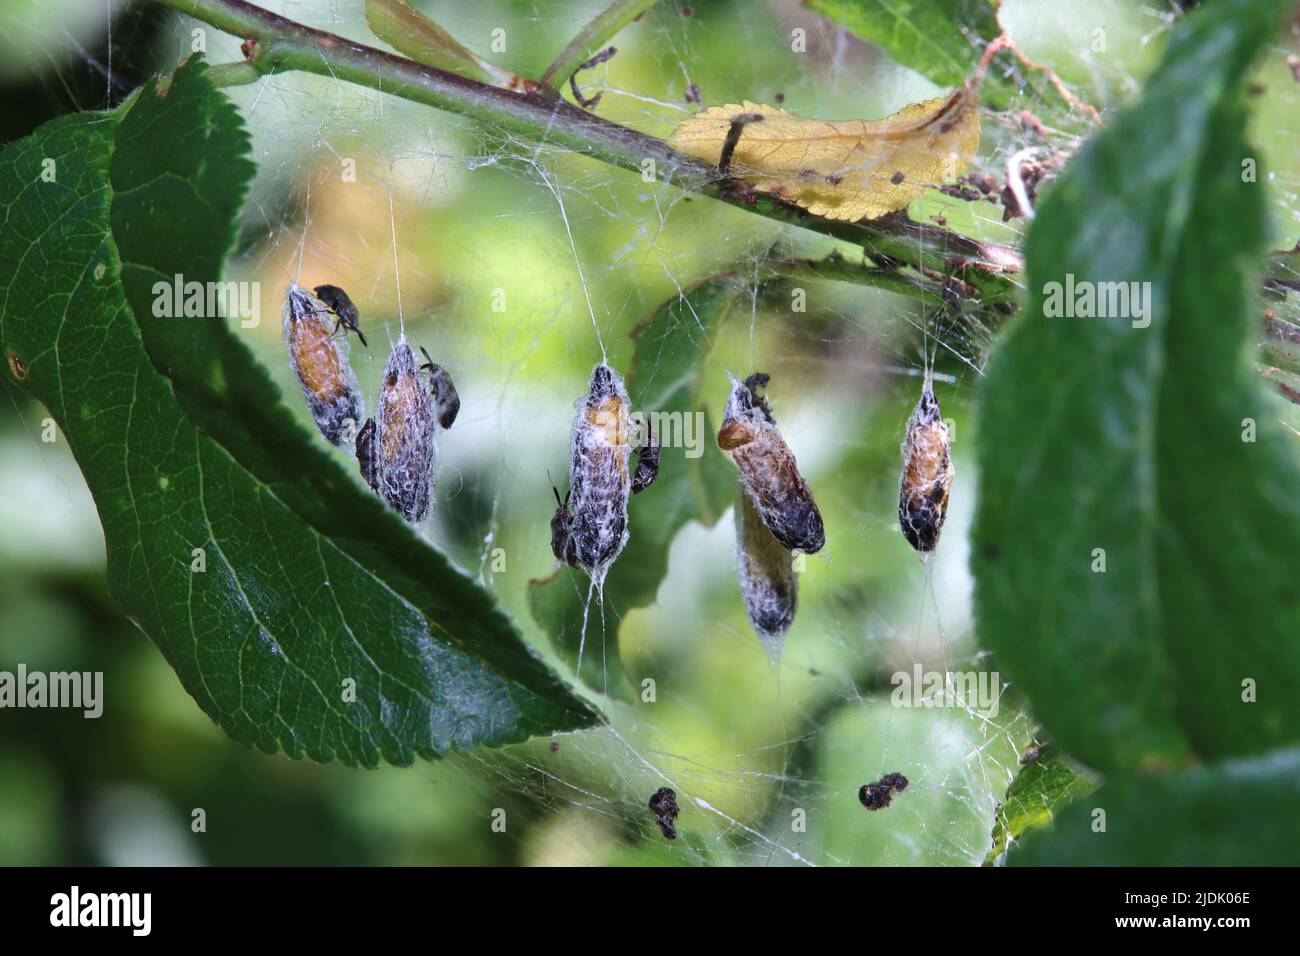 Puppen der Pflaumen-Gespinstmotte (Yponomeuta padella), auf denen sich räuberische Weichwanzen (Atractotomus mali) befinden Stock Photo